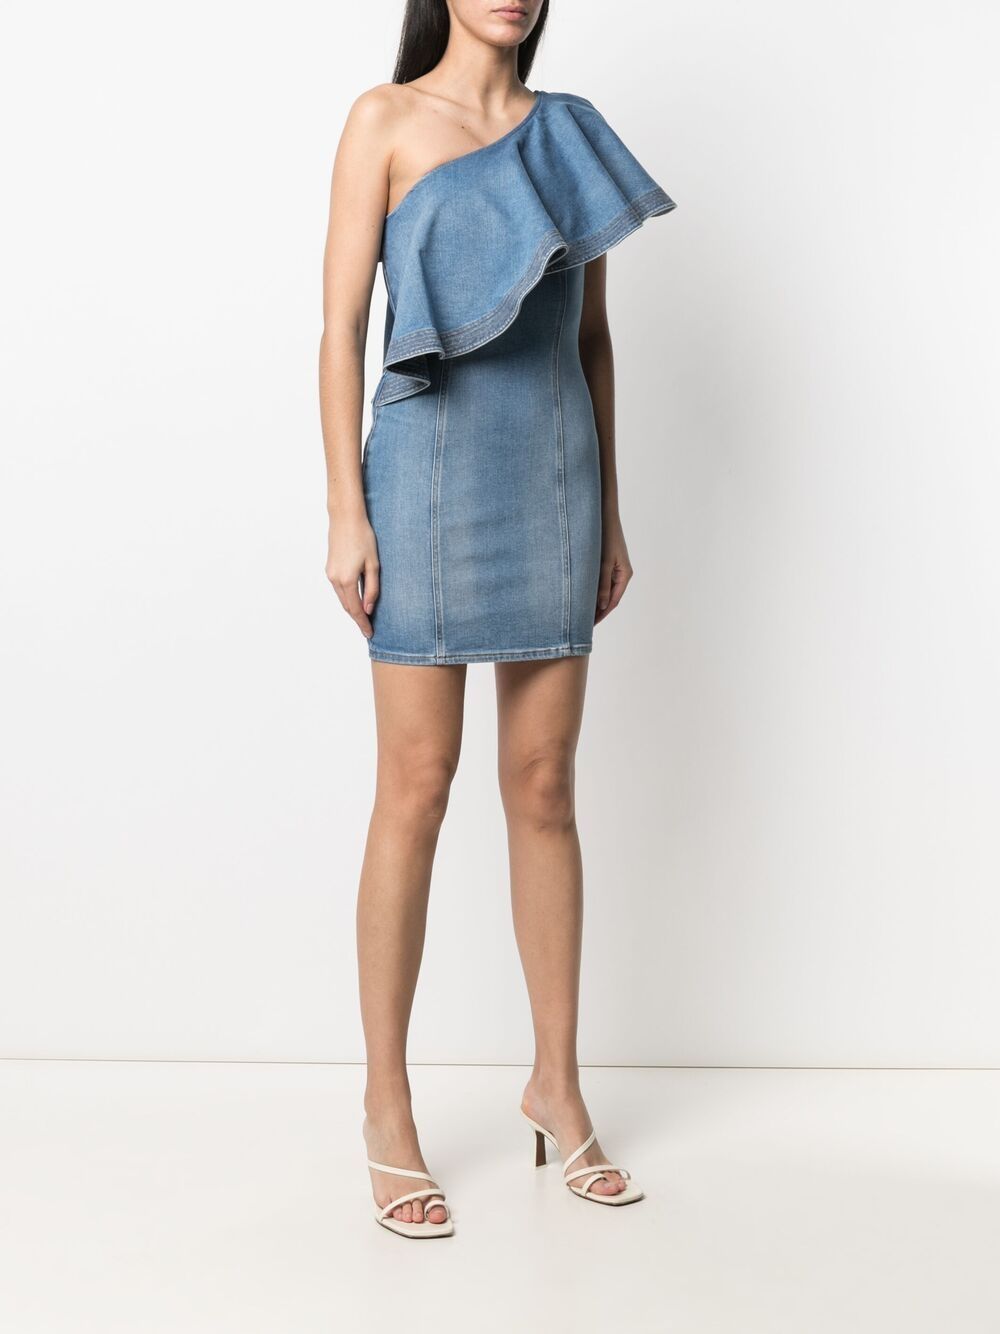 фото Elisabetta franchi джинсовое платье мини на одно плечо